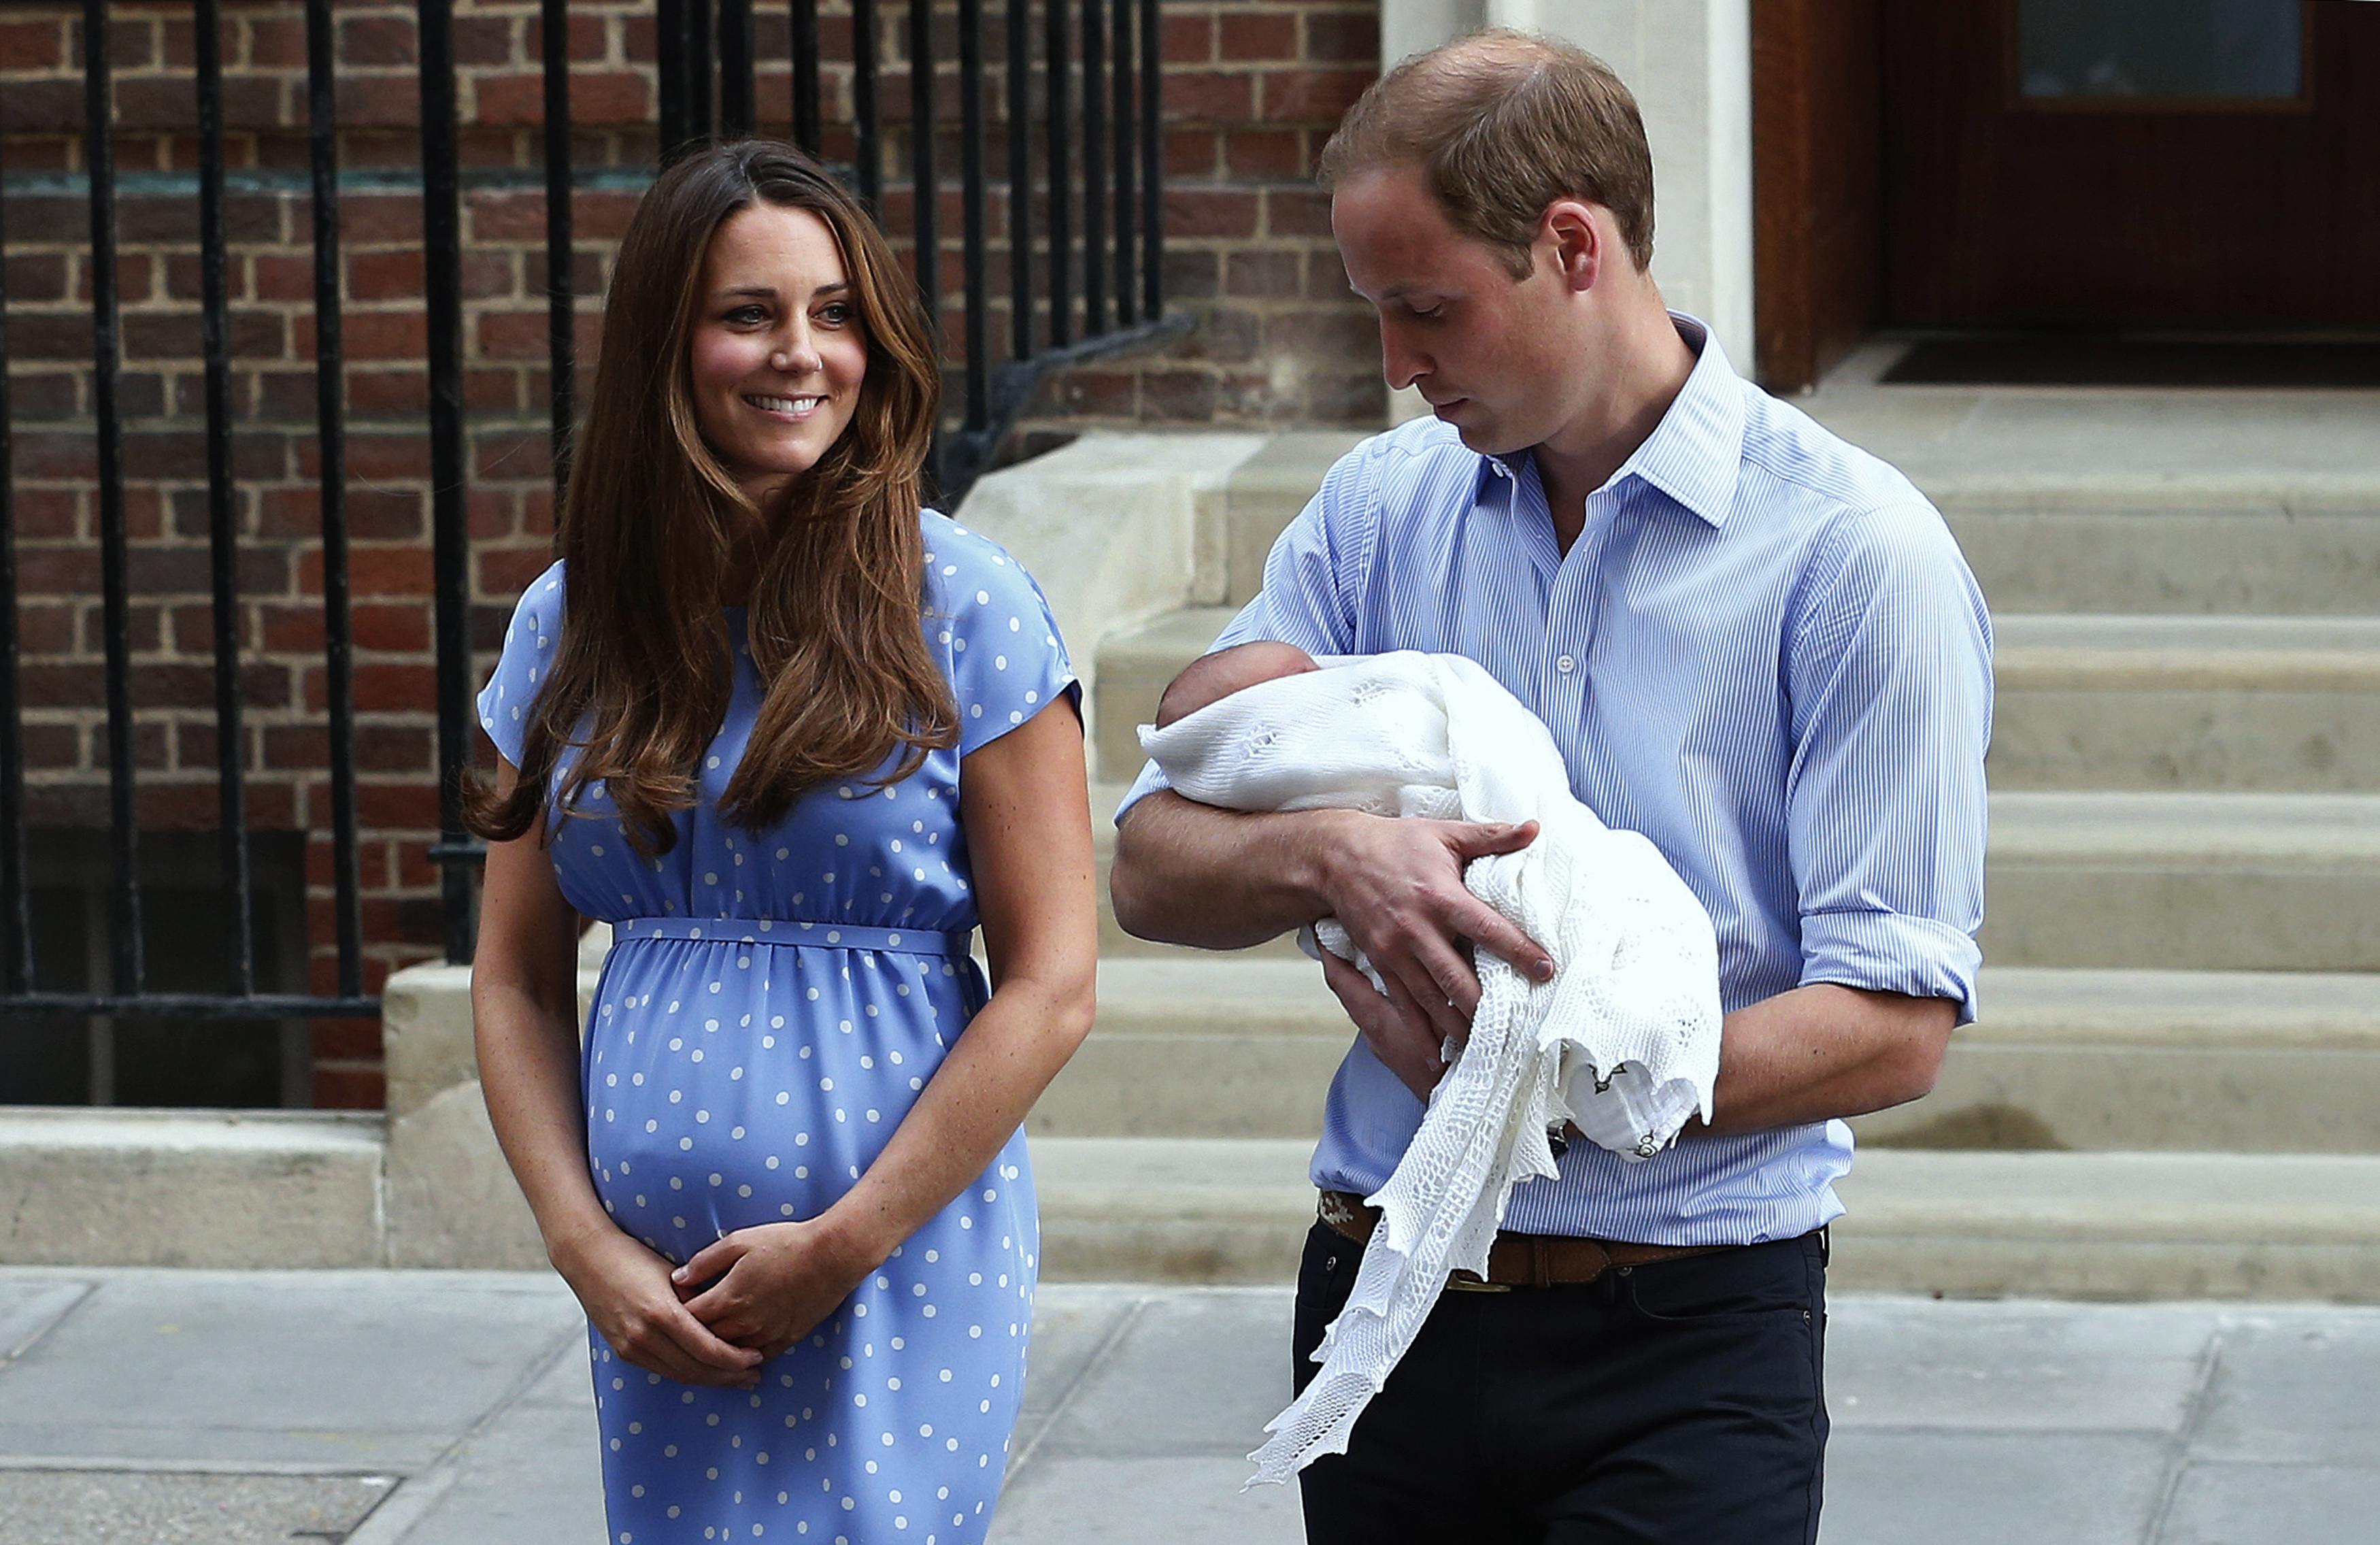 Con alegría, humor y apuestas, los británicos reciben la noticia del embarazo de Kate #RoyalBaby